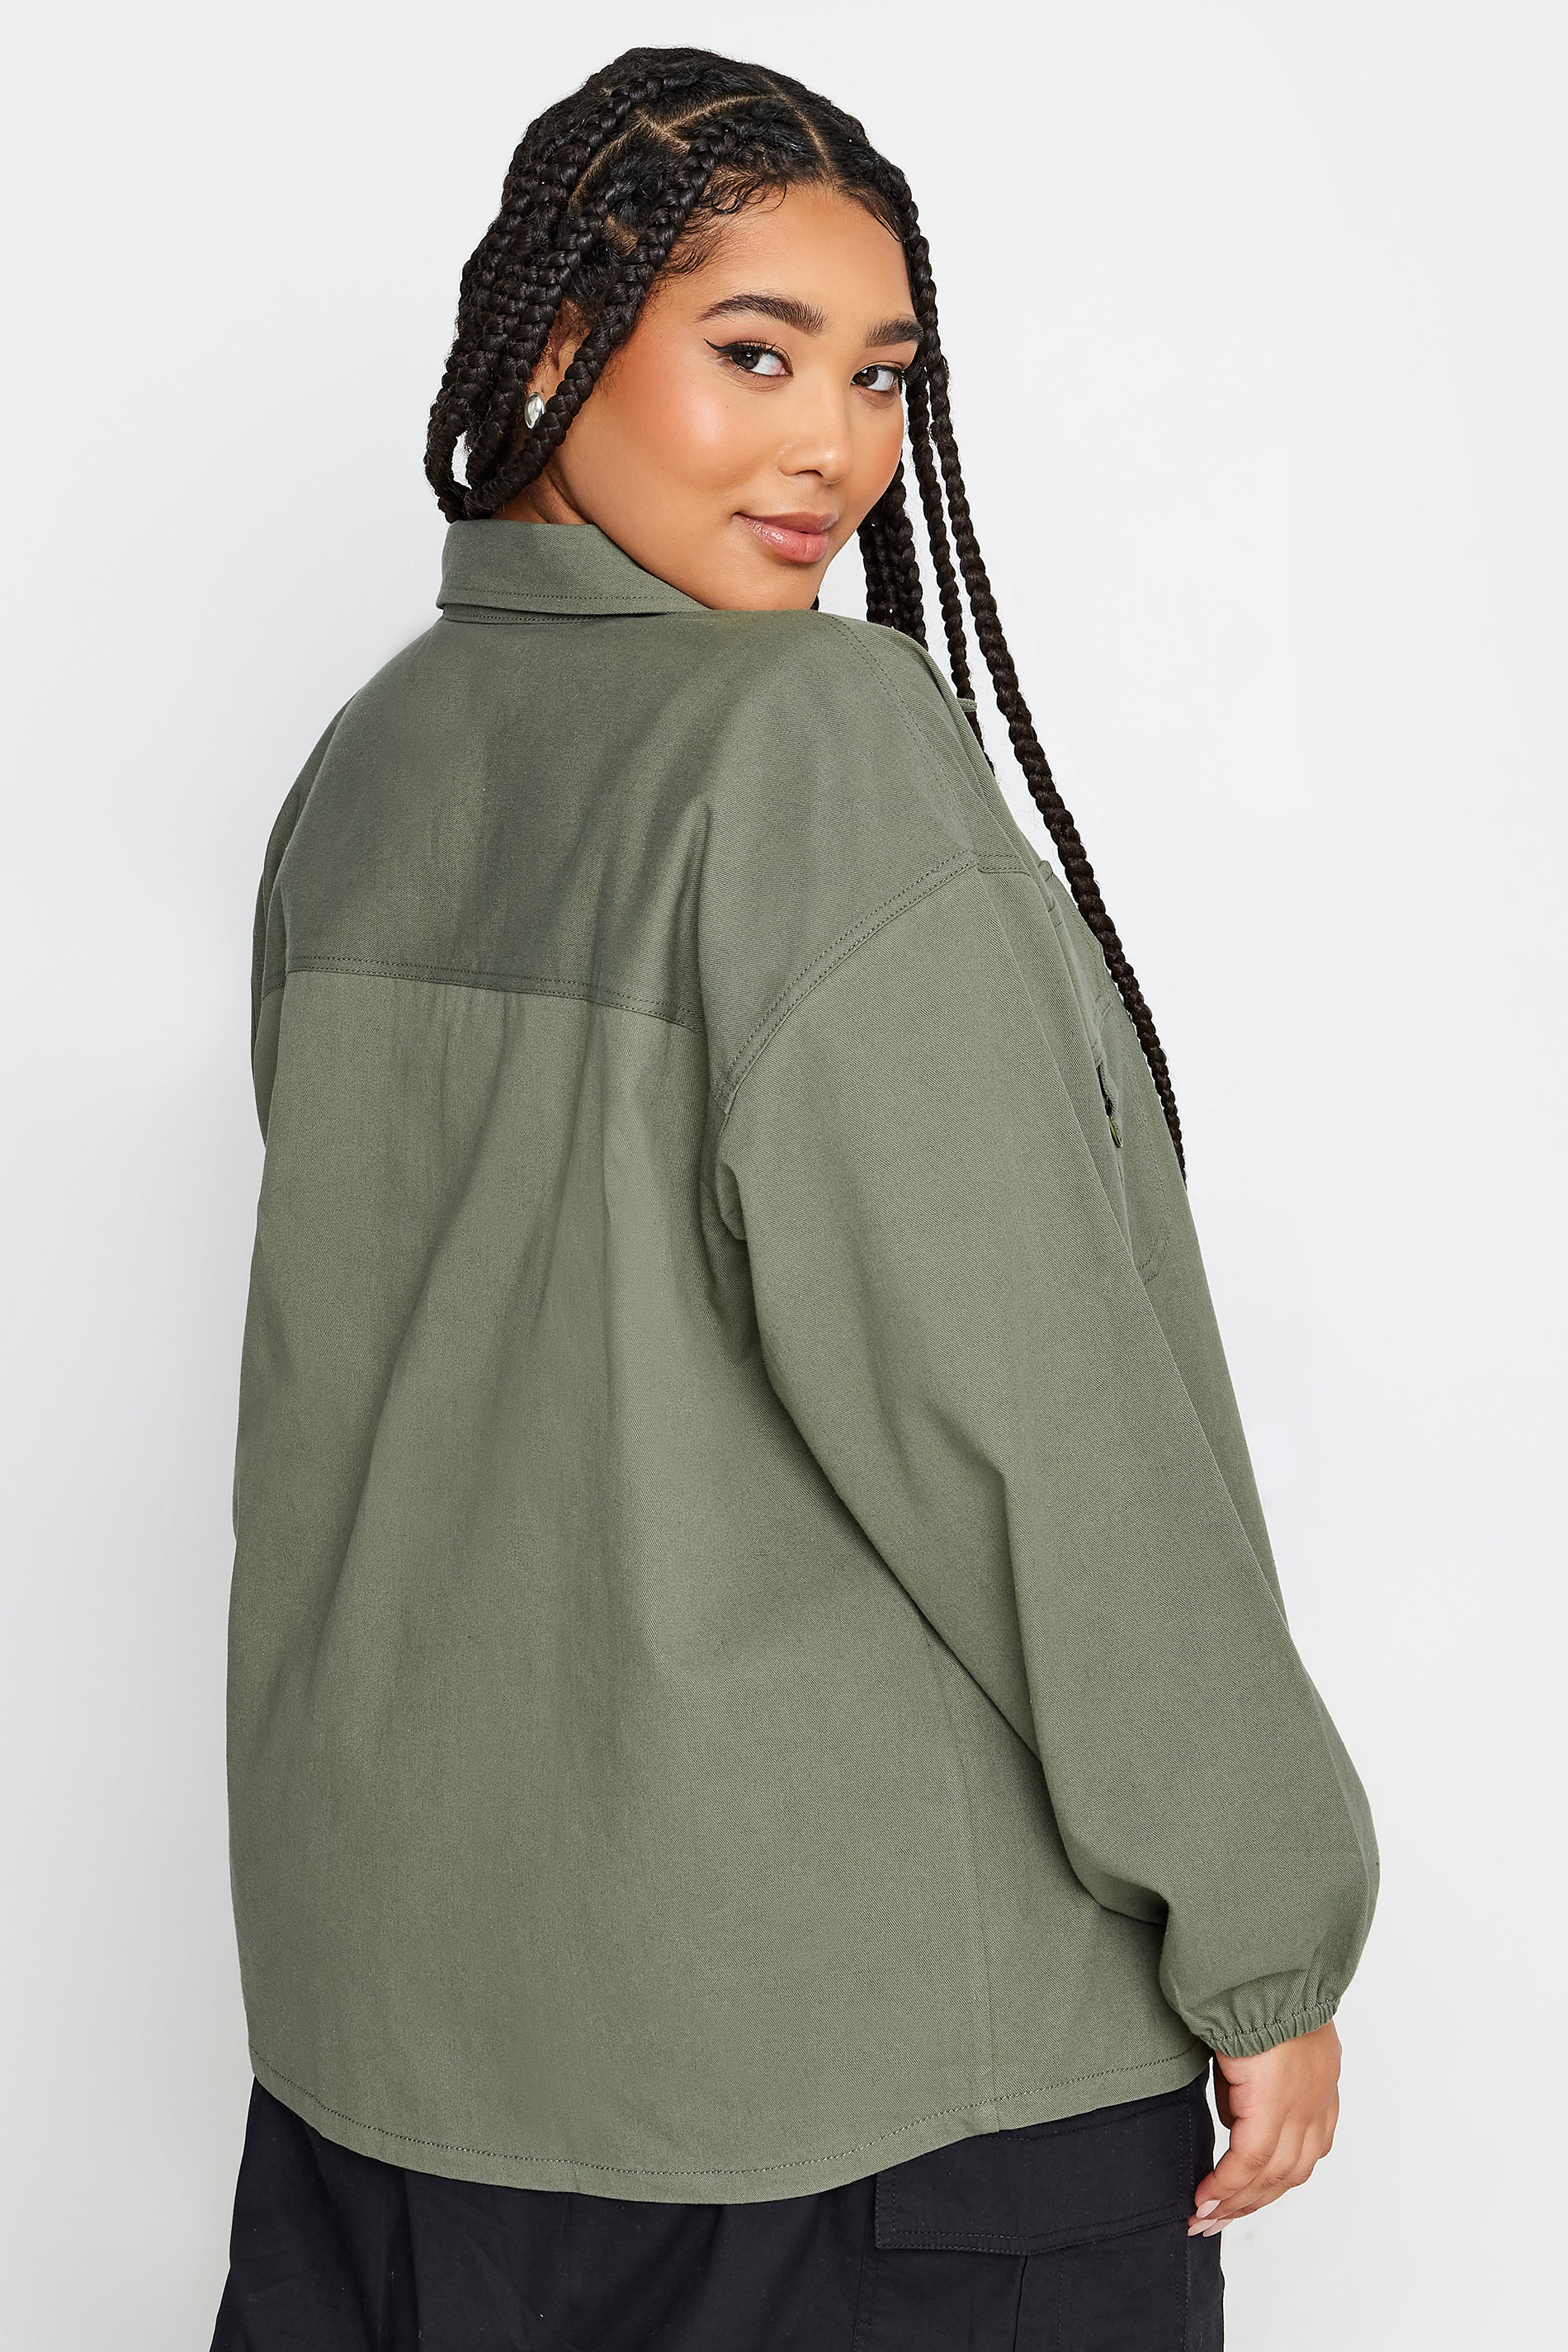 YOURS Plus Size Khaki Green Utility Bomber Jacket | Yours Clothing 3